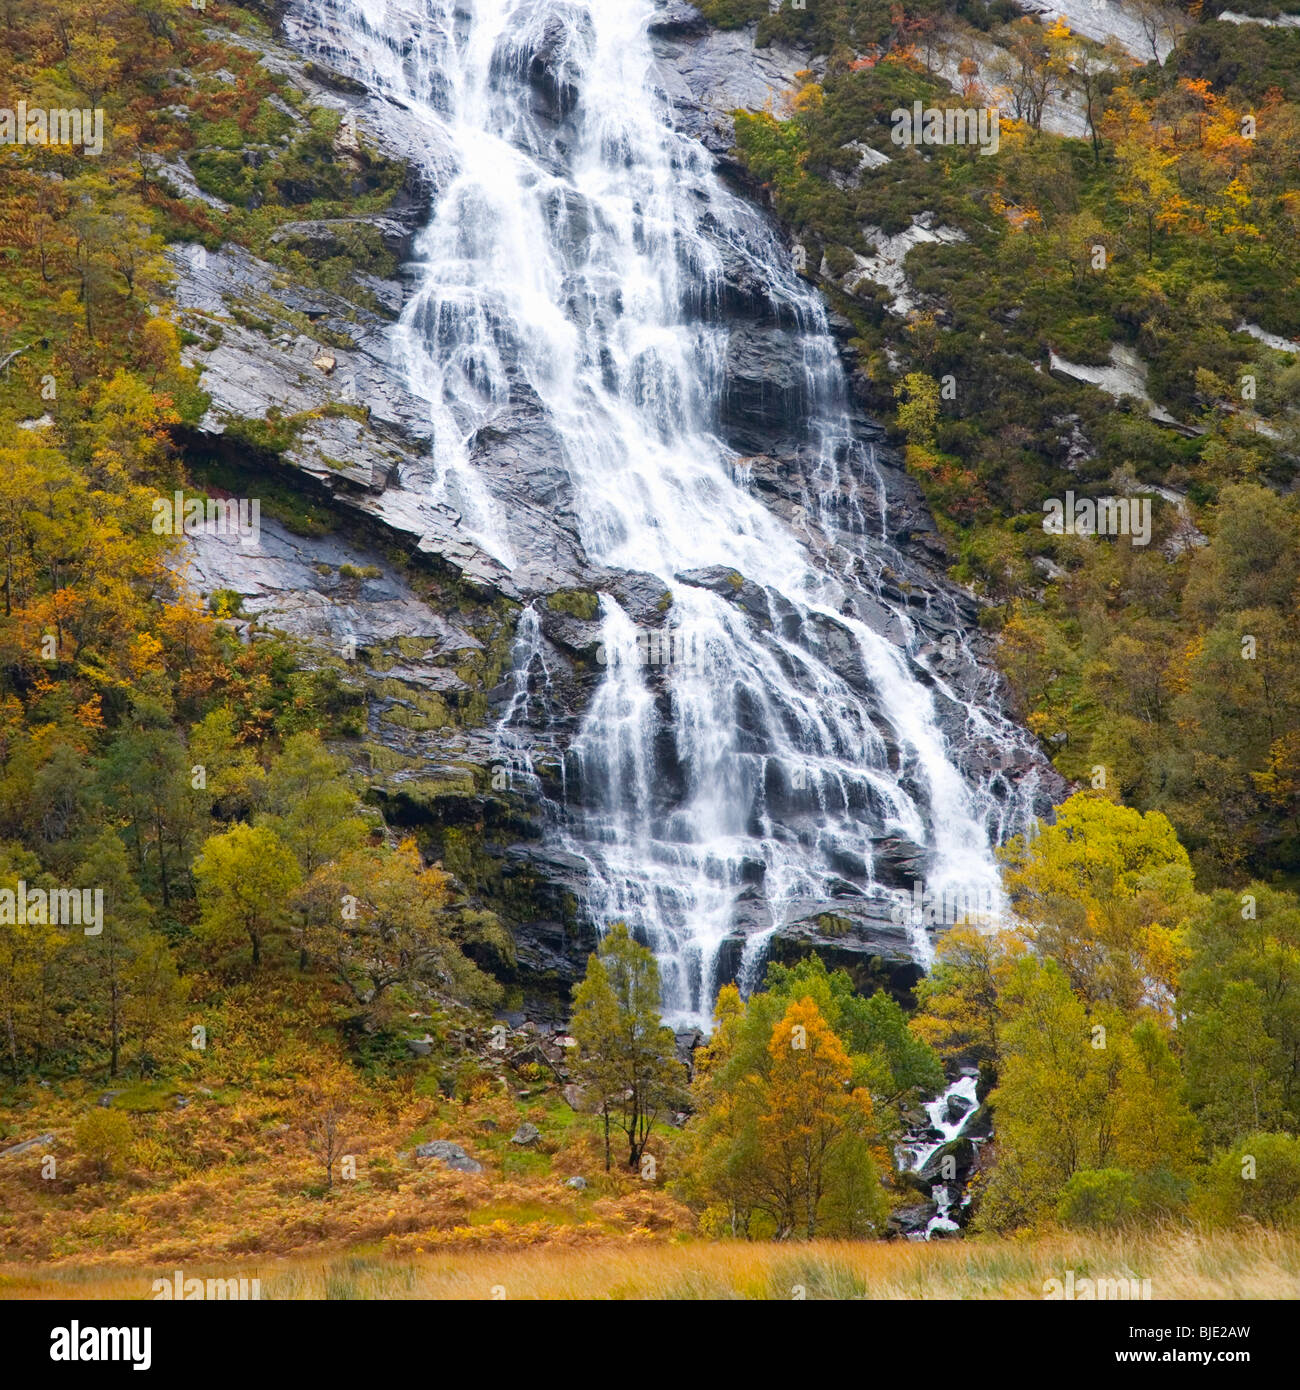 Glen Nevis, Highland, Scotland. Steall Waterfall, autumn. Stock Photo